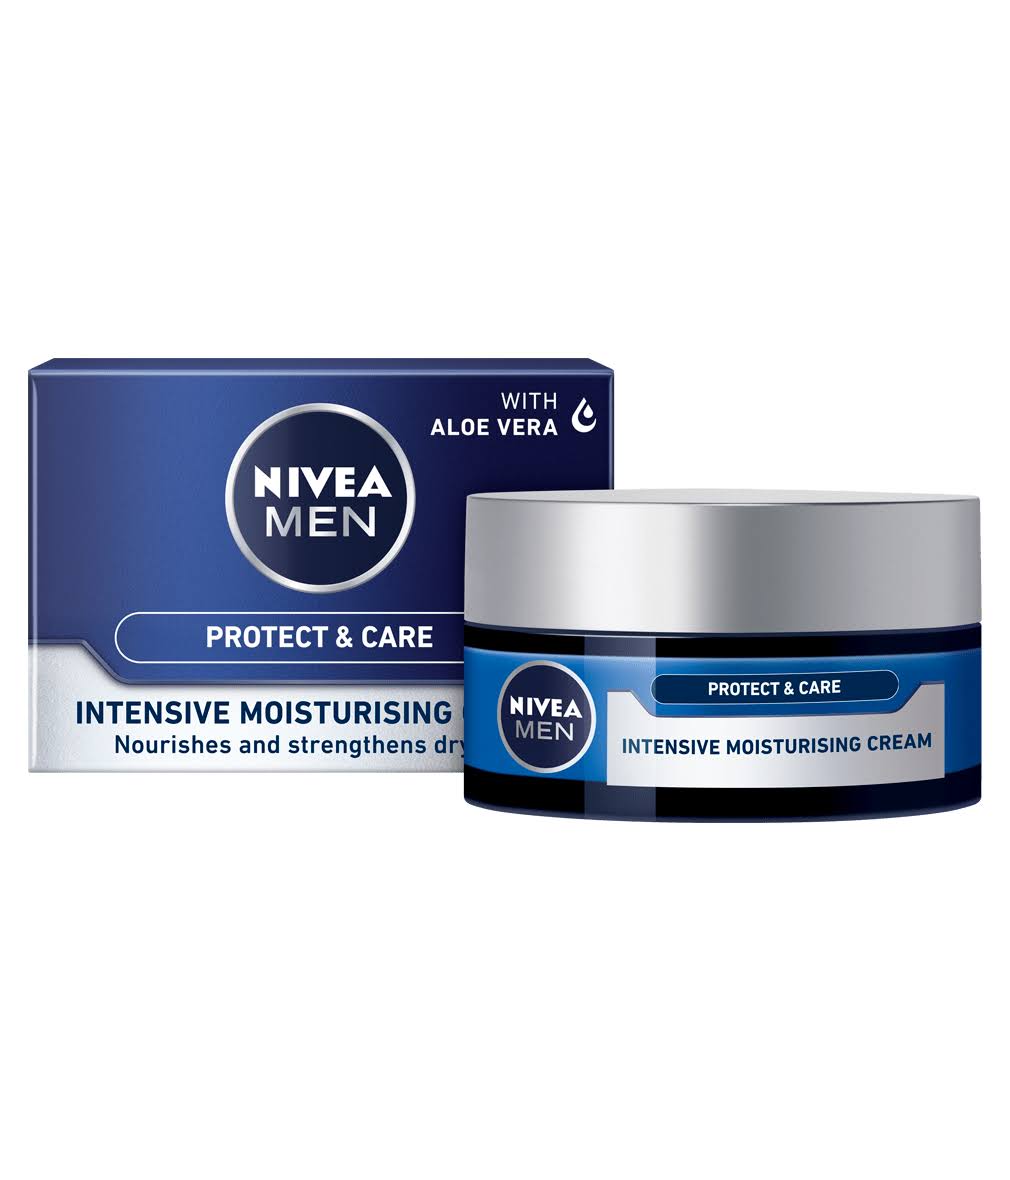 Nivea Men Originals Intensive Moisturising Cream with Aloe Vera